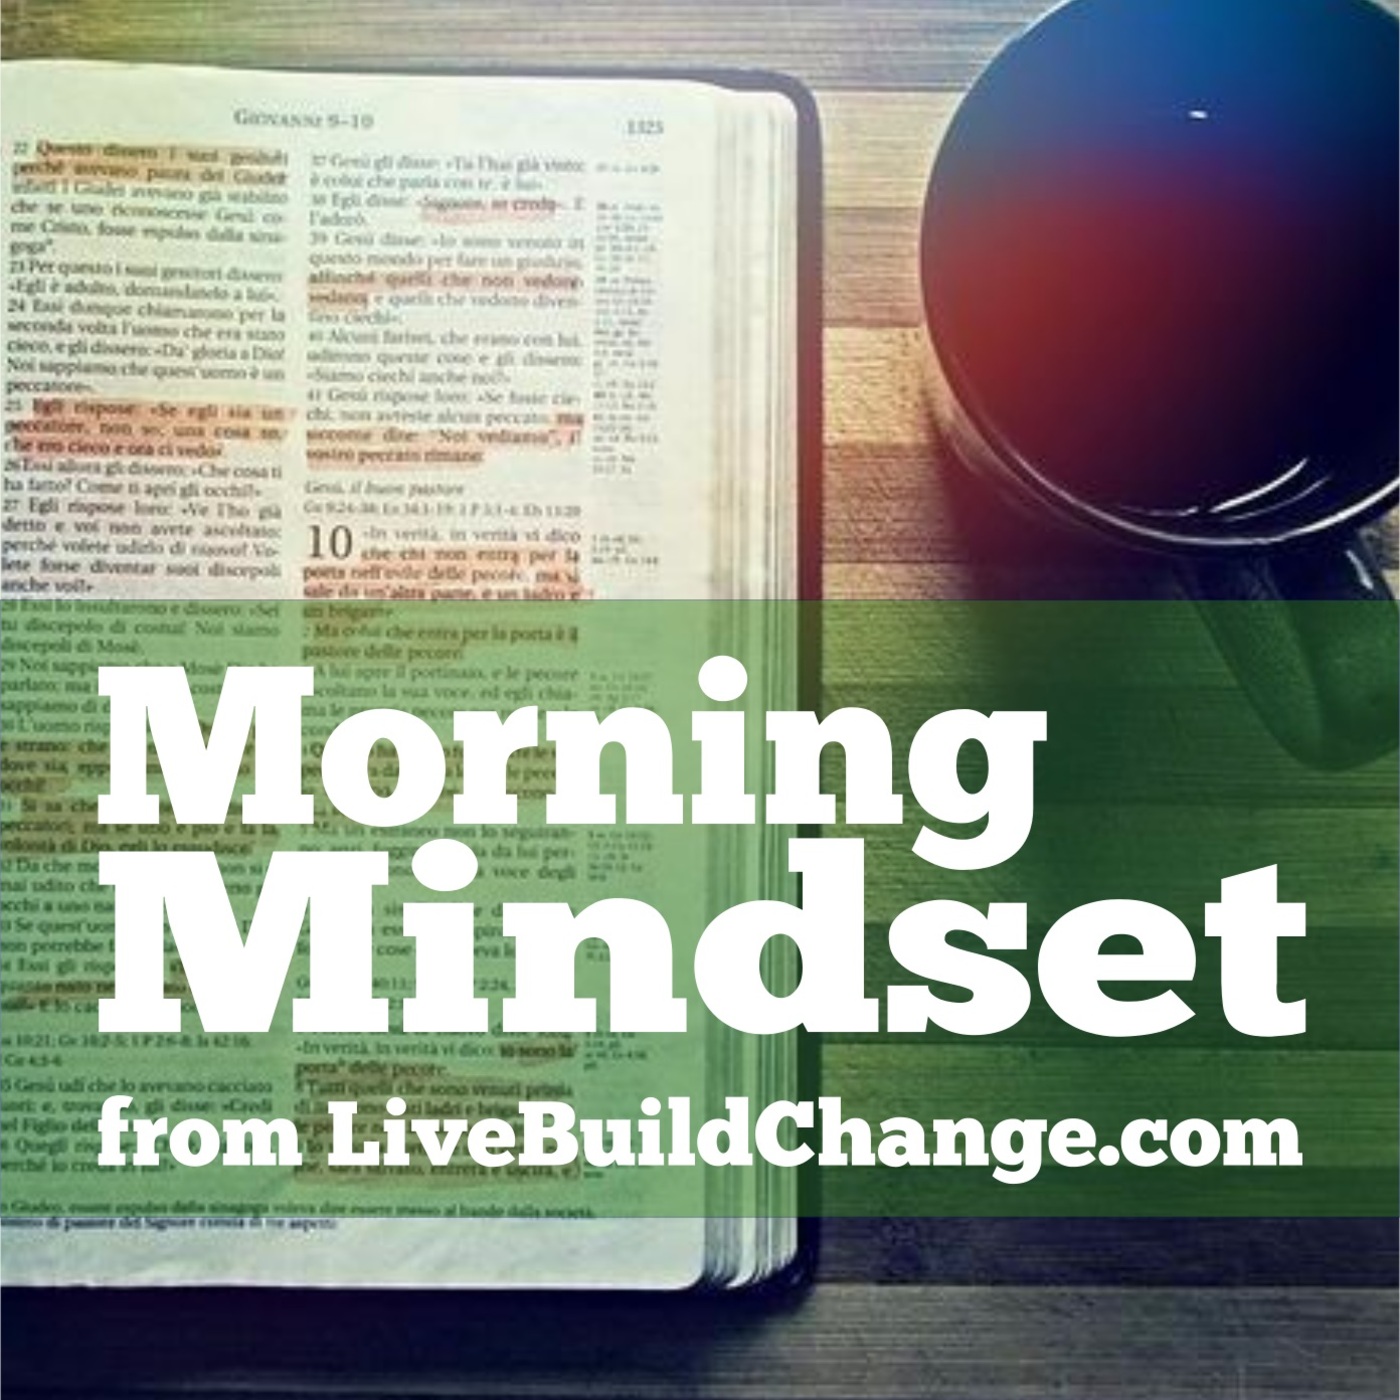 November 17 Morning Mindset from Live Build Change